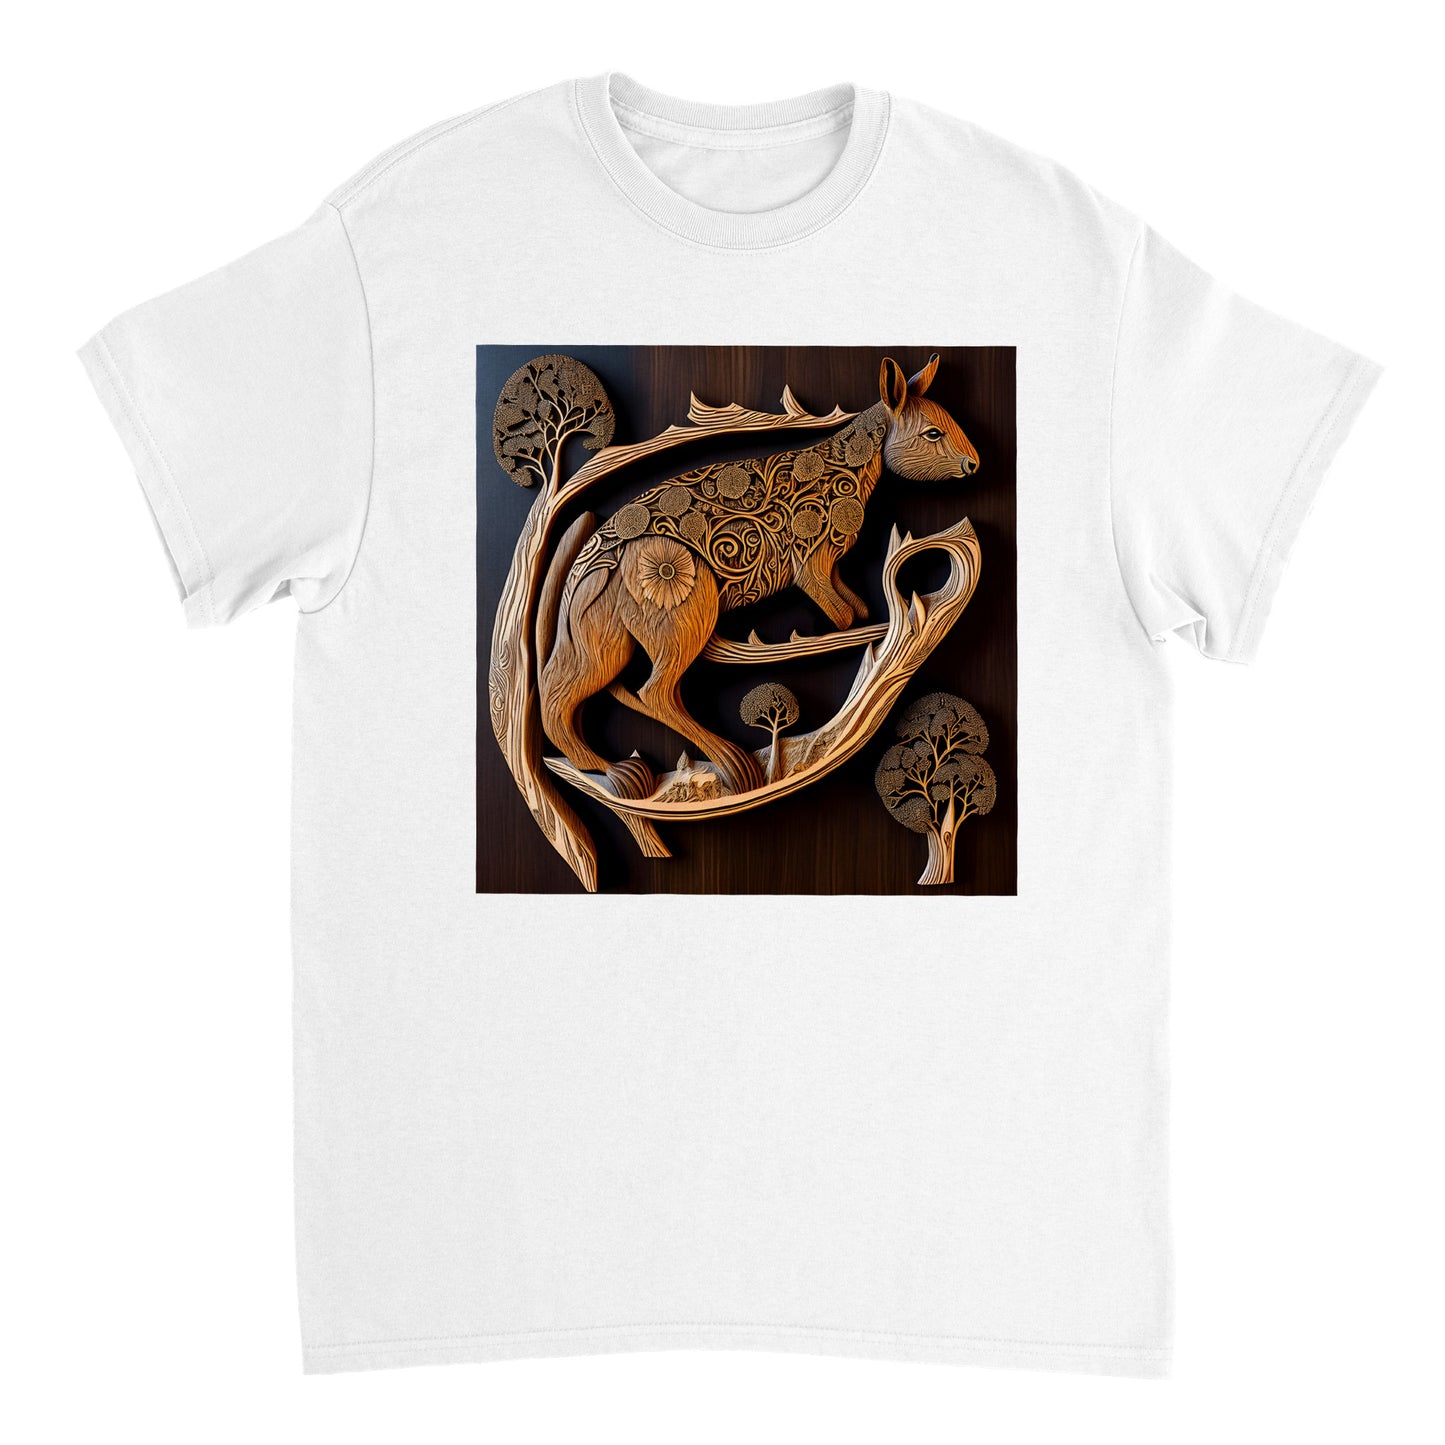 3D Wooden Animal Art - Heavyweight Unisex Crewneck T-shirt 68